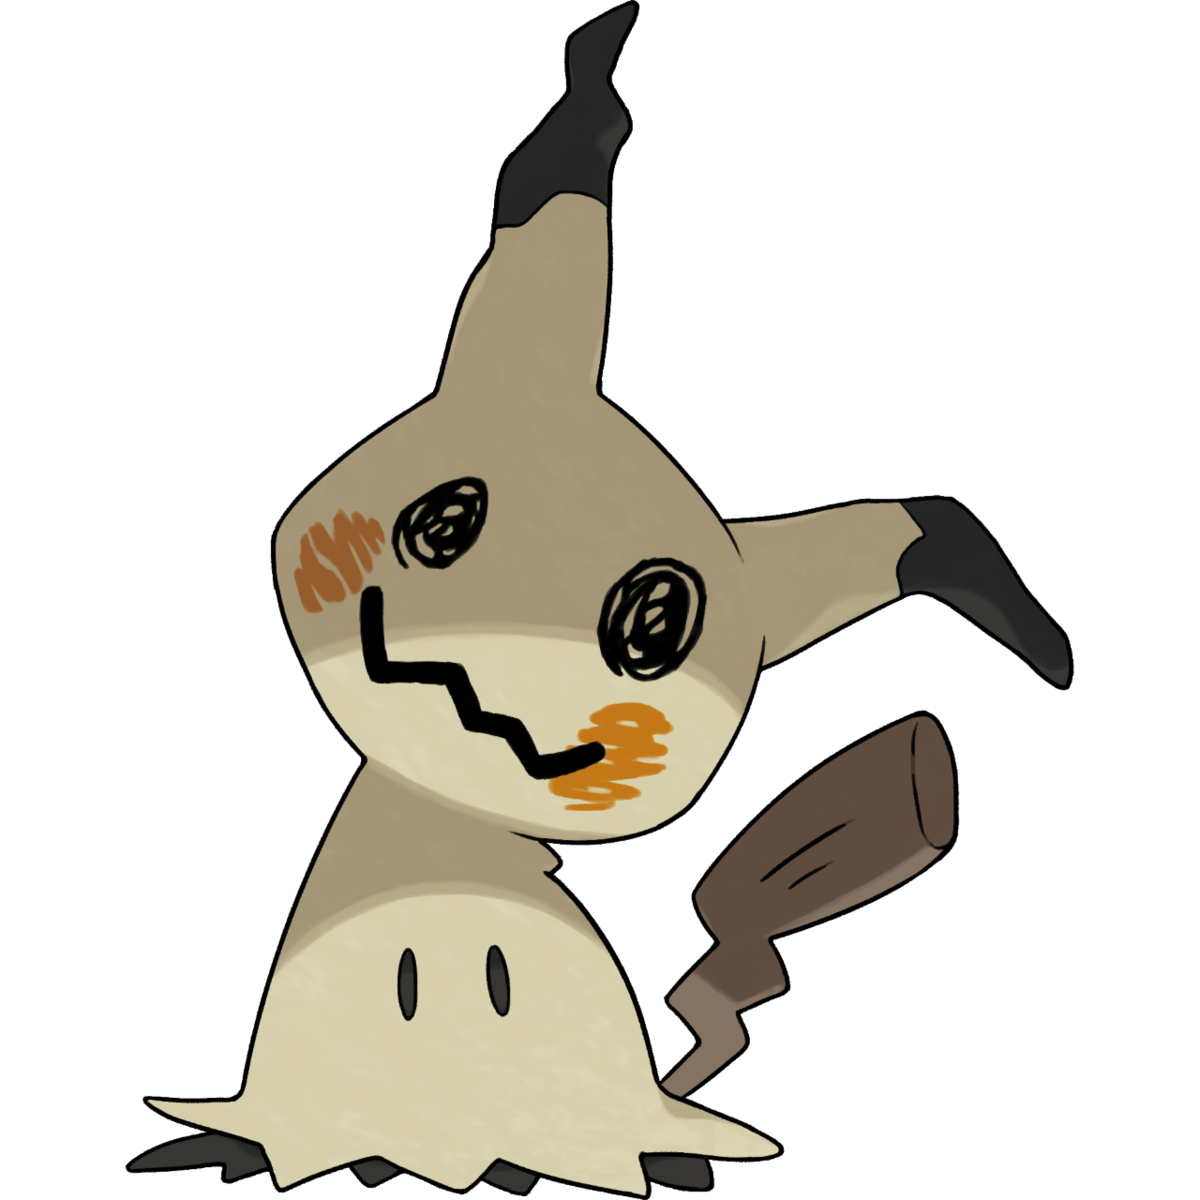 Mimikyu Pokemon PNG Photo Image